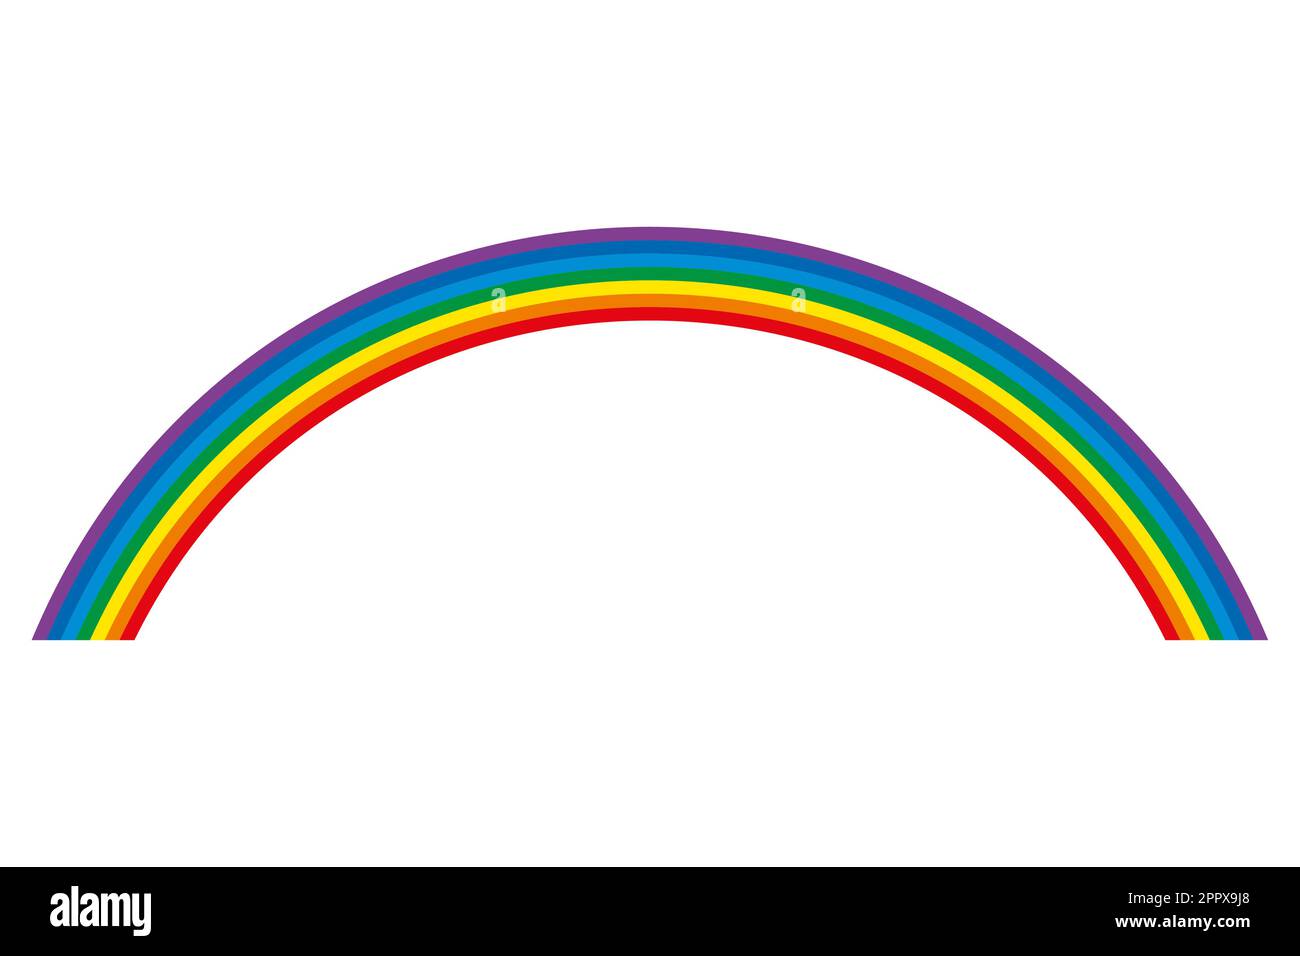 Regenbogen, mehrfarbiger Kreisbogen, Spektrum des sichtbaren Lichts Stock Vektor